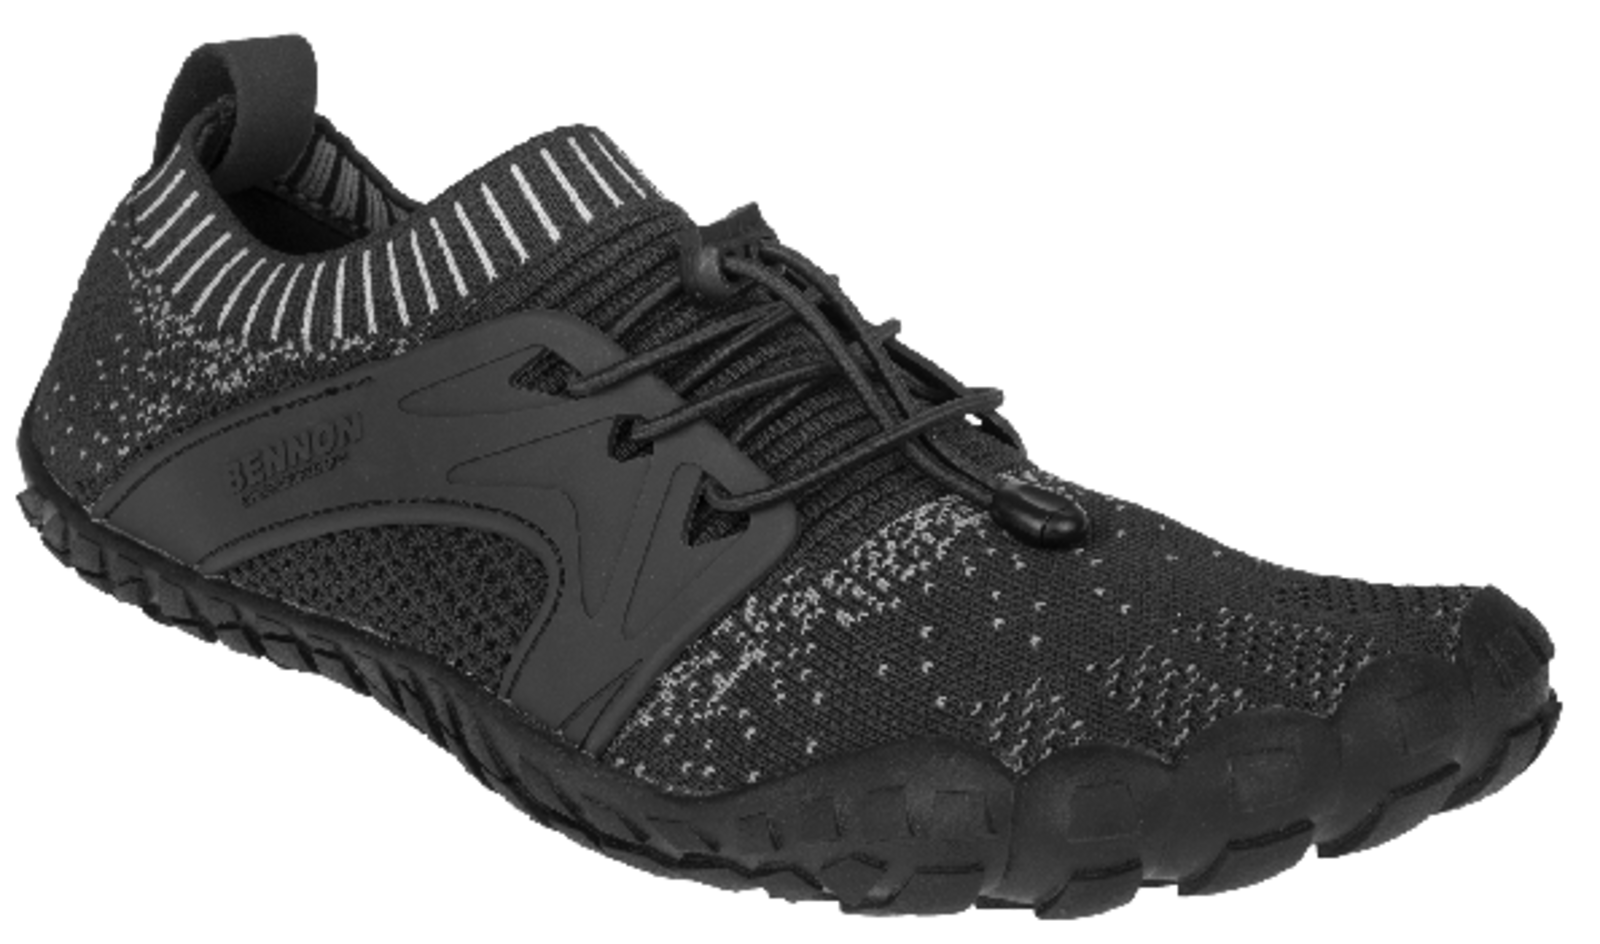 Voľnočasová barefoot obuv Bennon Bosky - veľkosť: 46, farba: čierna/biela